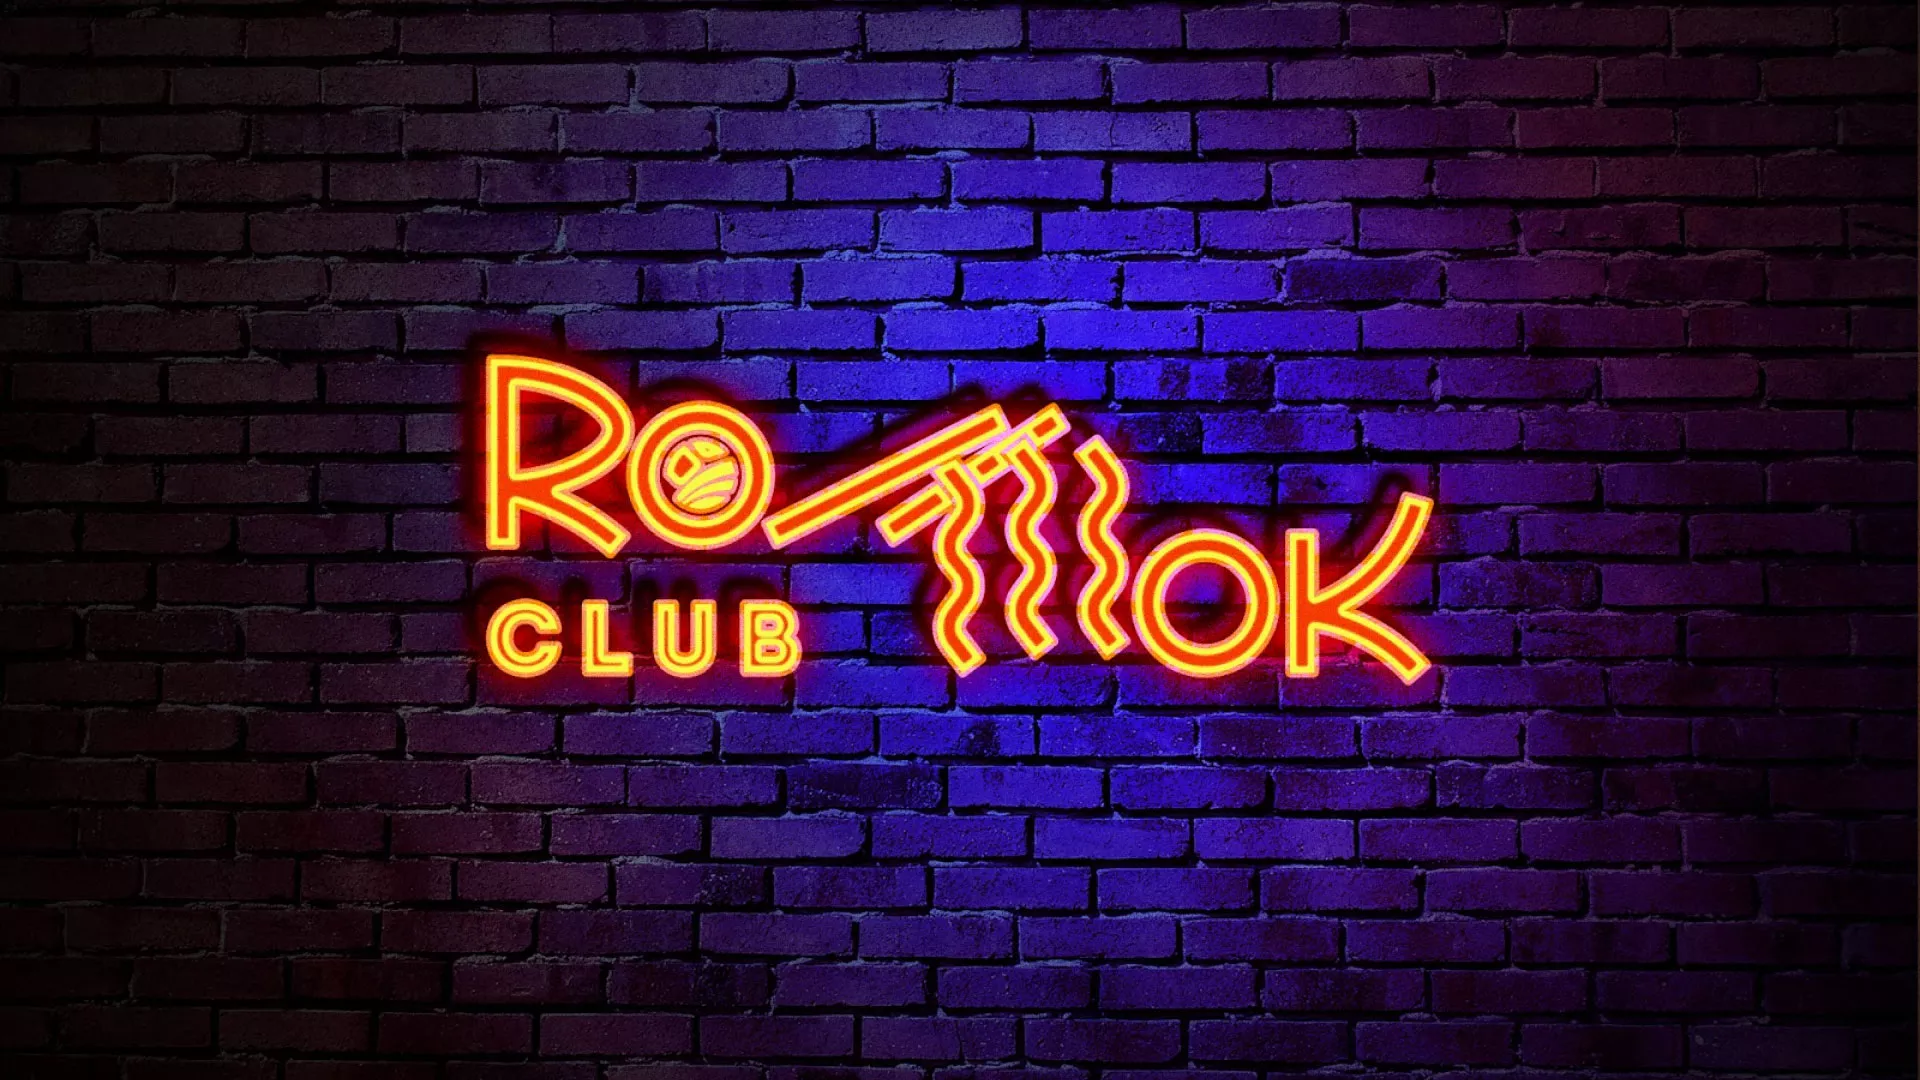 Разработка интерьерной вывески суши-бара «Roll Wok Club» в Луге